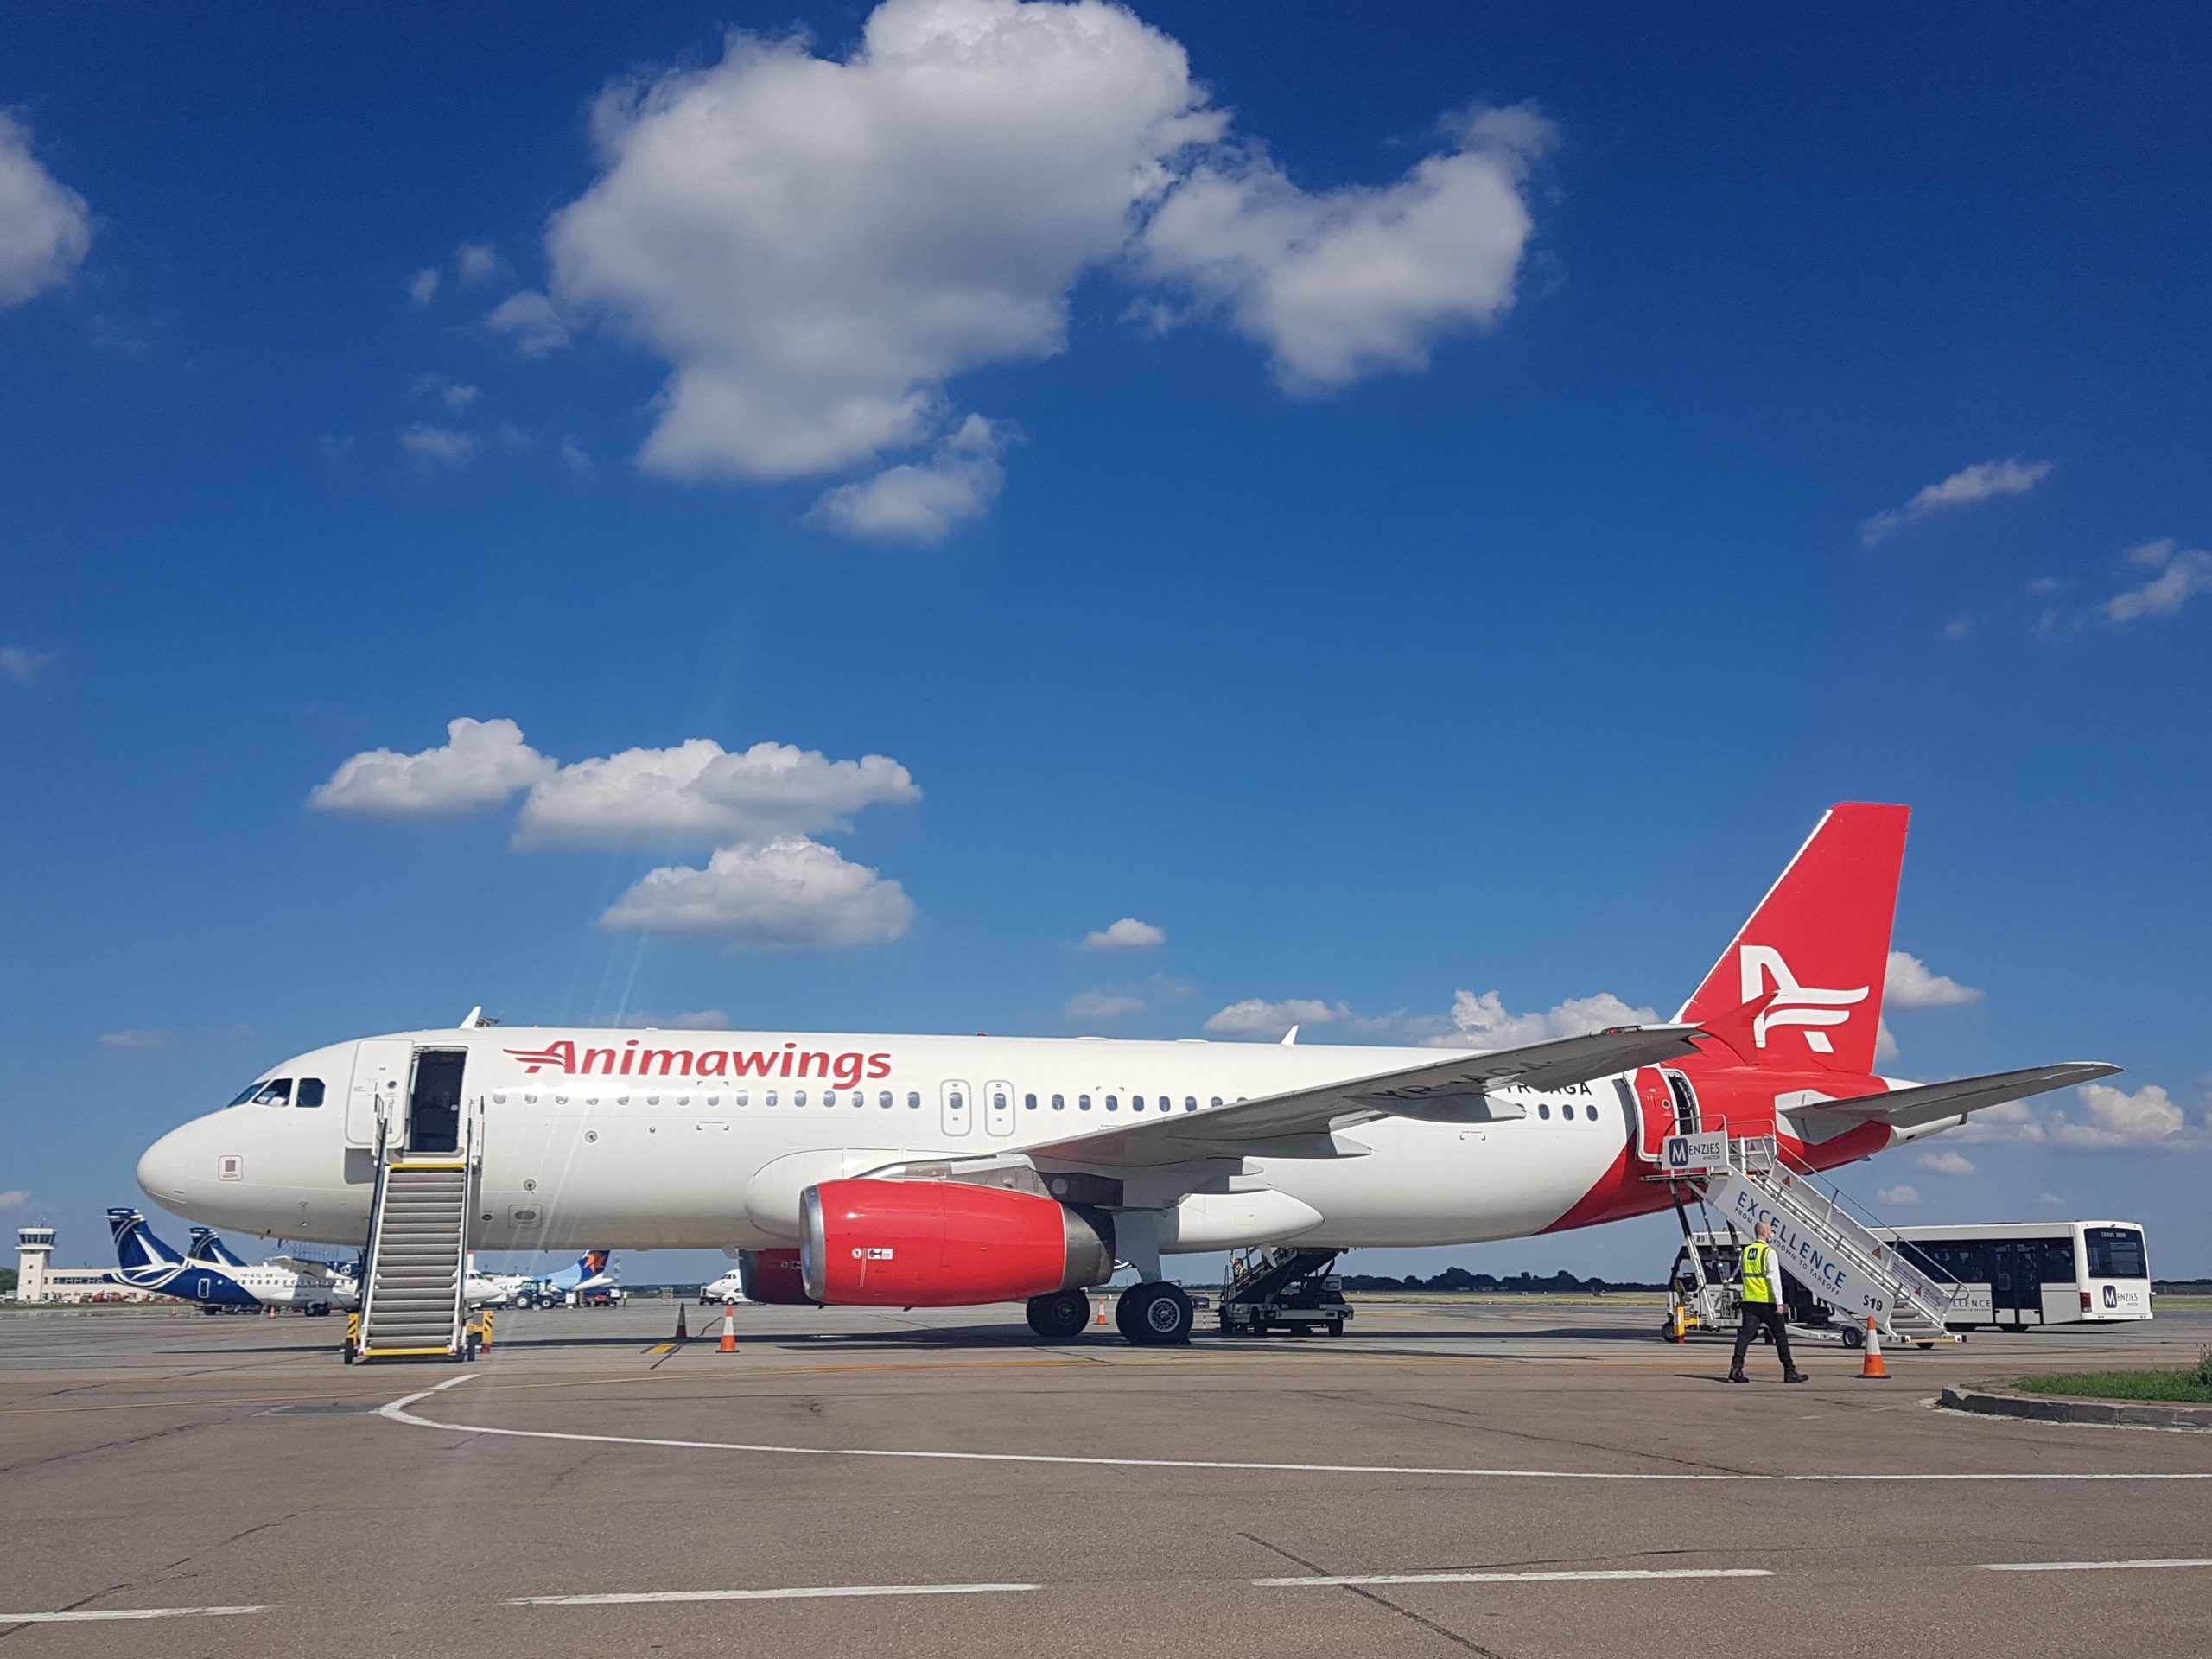  Cursă charter Animawings, cu destinaţia Antalya, blocată peste o oră pe Aeroportul Henri Coandă